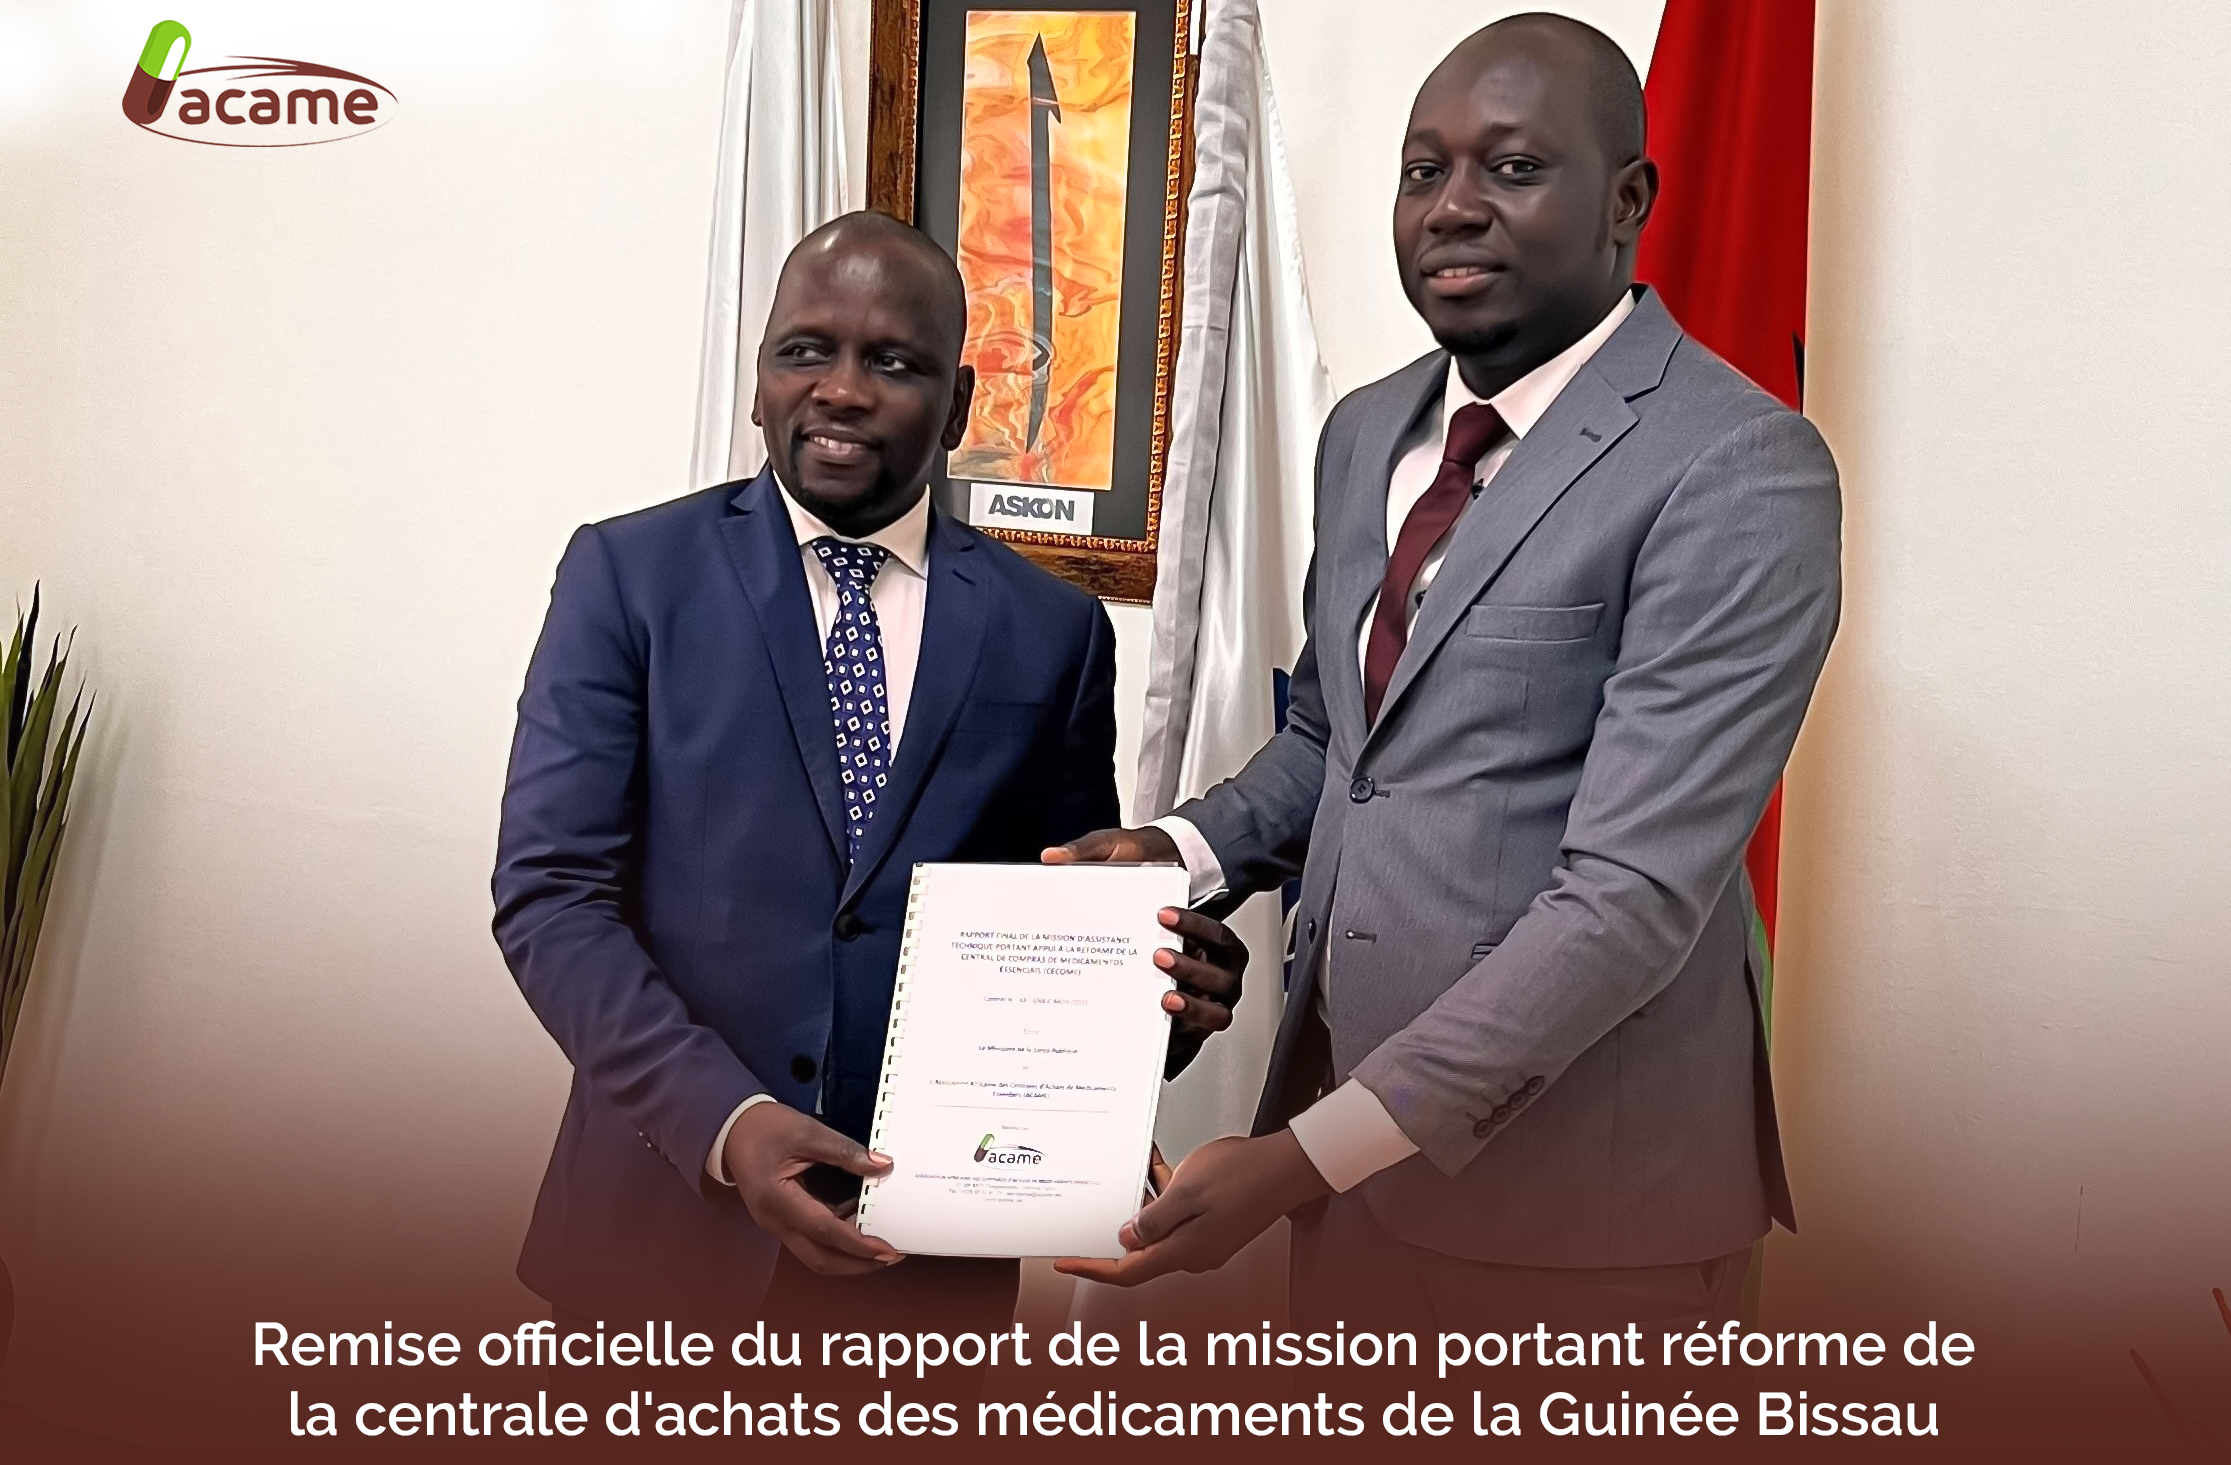 Remise officielle du rapport de la mission portant réforme de la centrale d'achats des médicaments de la Guinée Bissau 